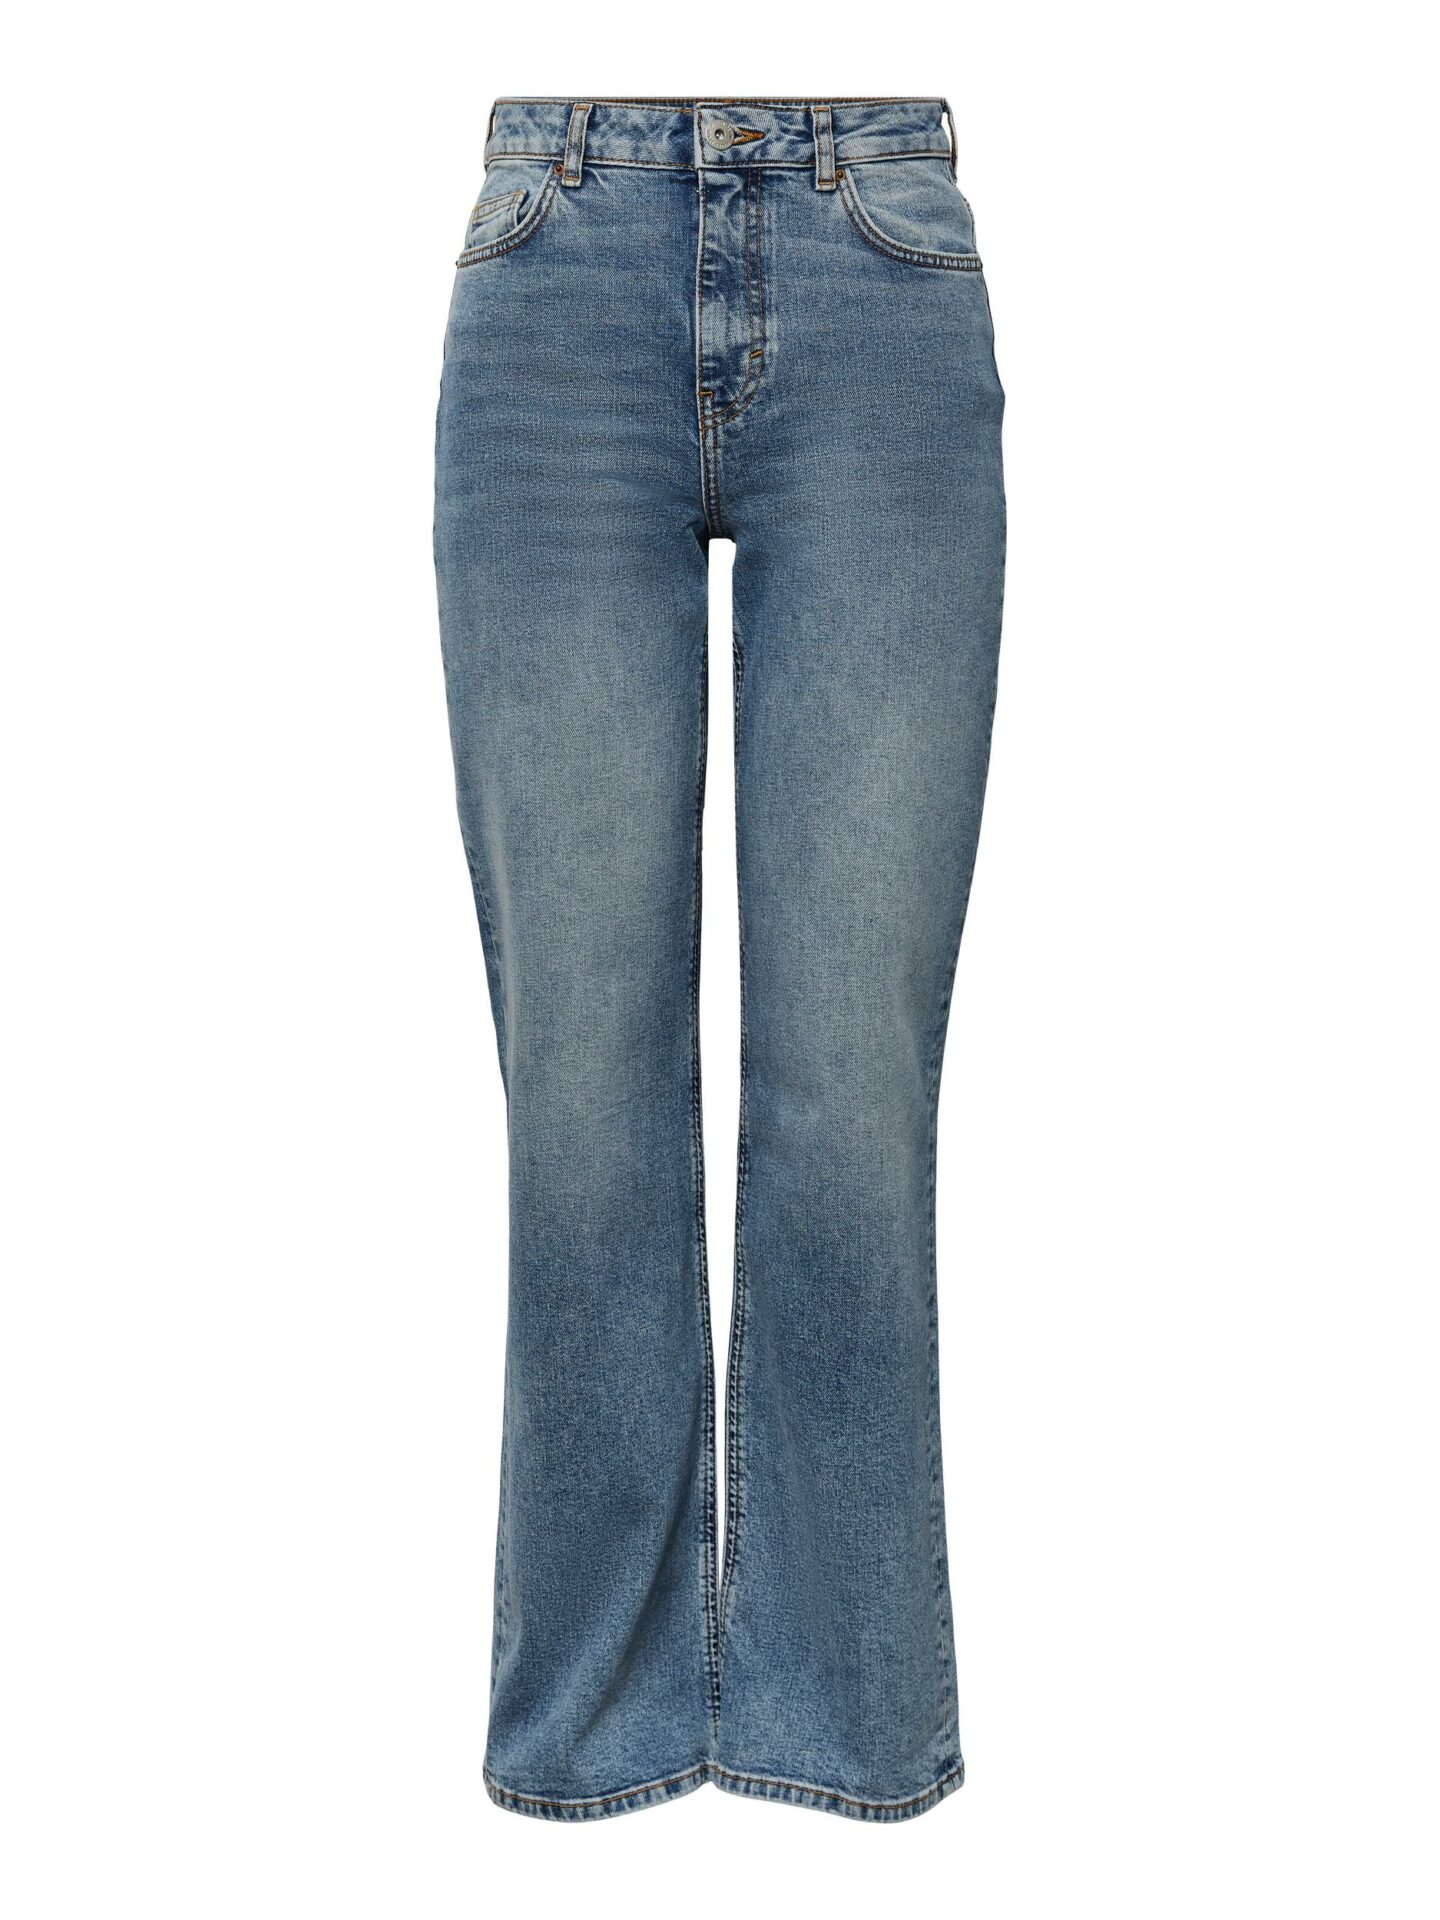 PIECES Jean Wide Medium Blue Denim, 98% coton, 2% élasthanne, jean coupe large, taille haute, Le Comptoir Rouen Le Havre